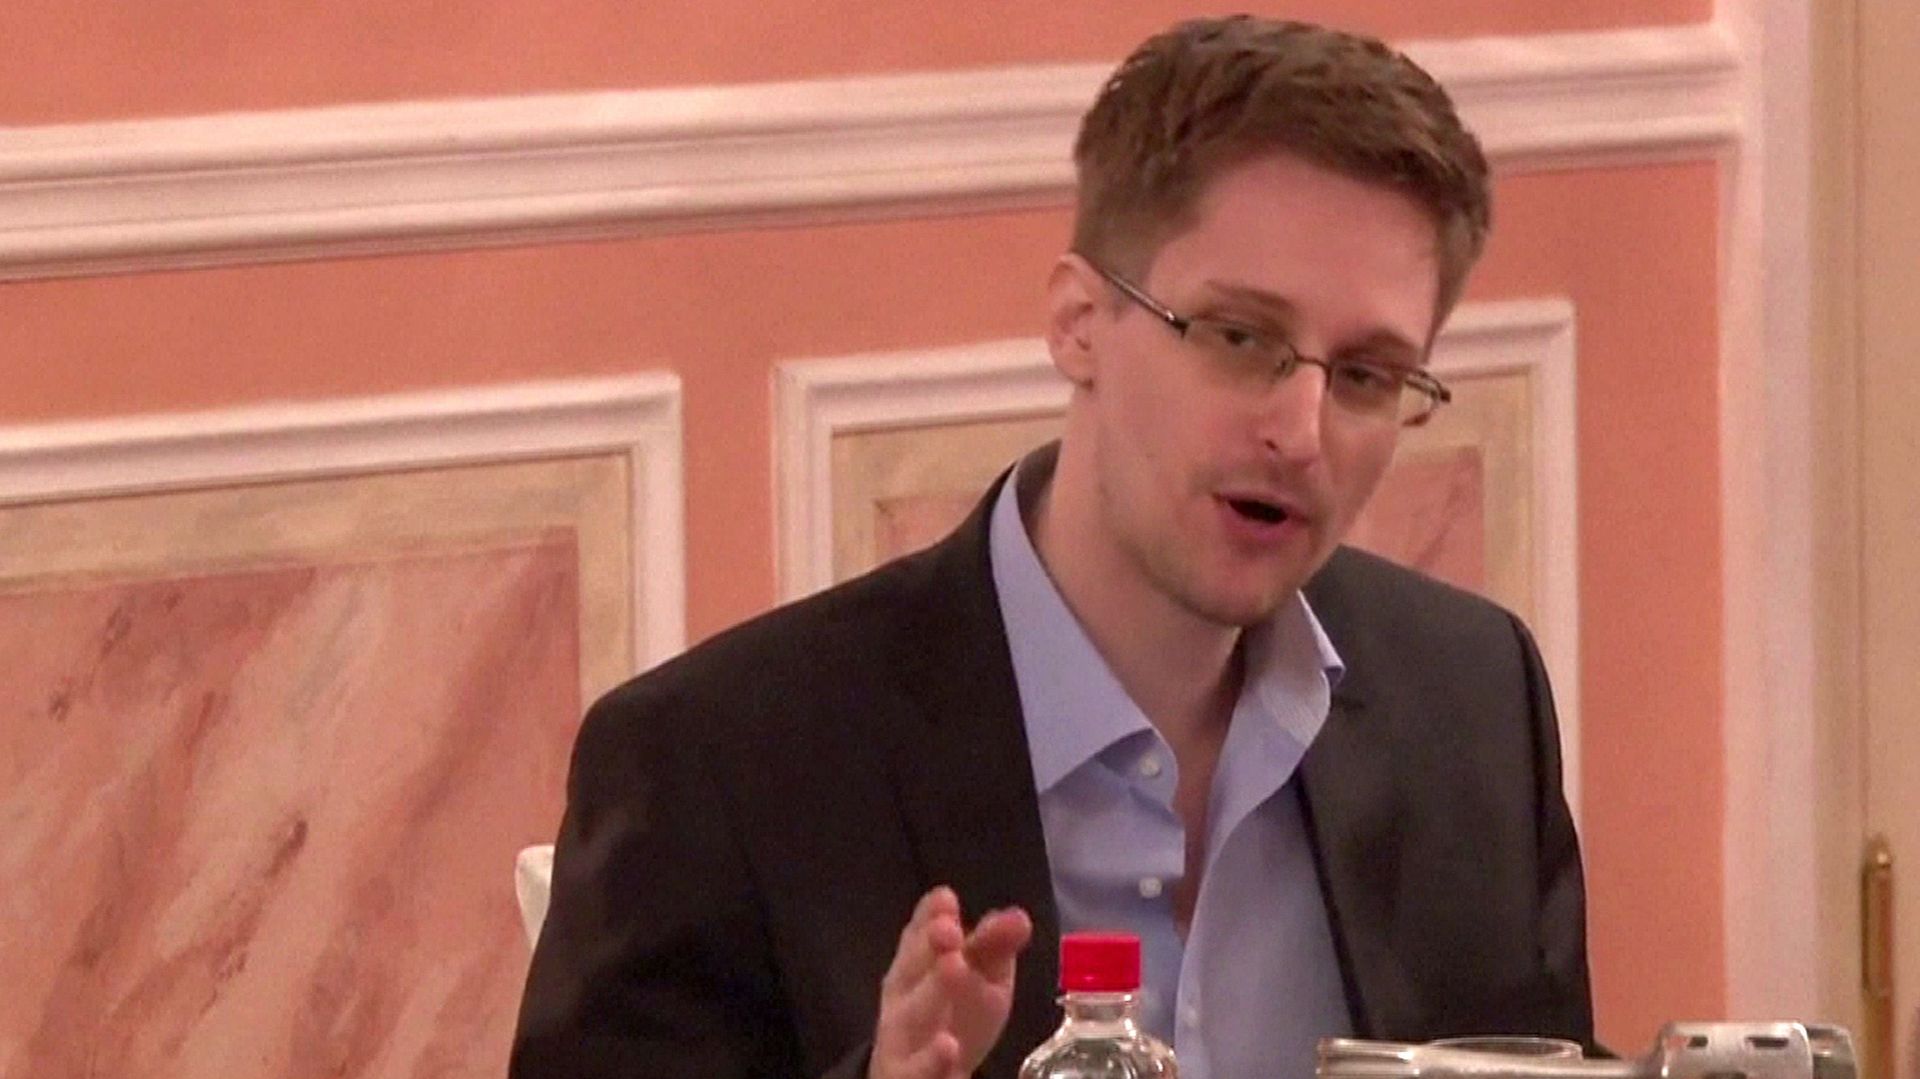 Edward Snowden est apparu dans une vidéo pour la première fois depuis son exil en Russie